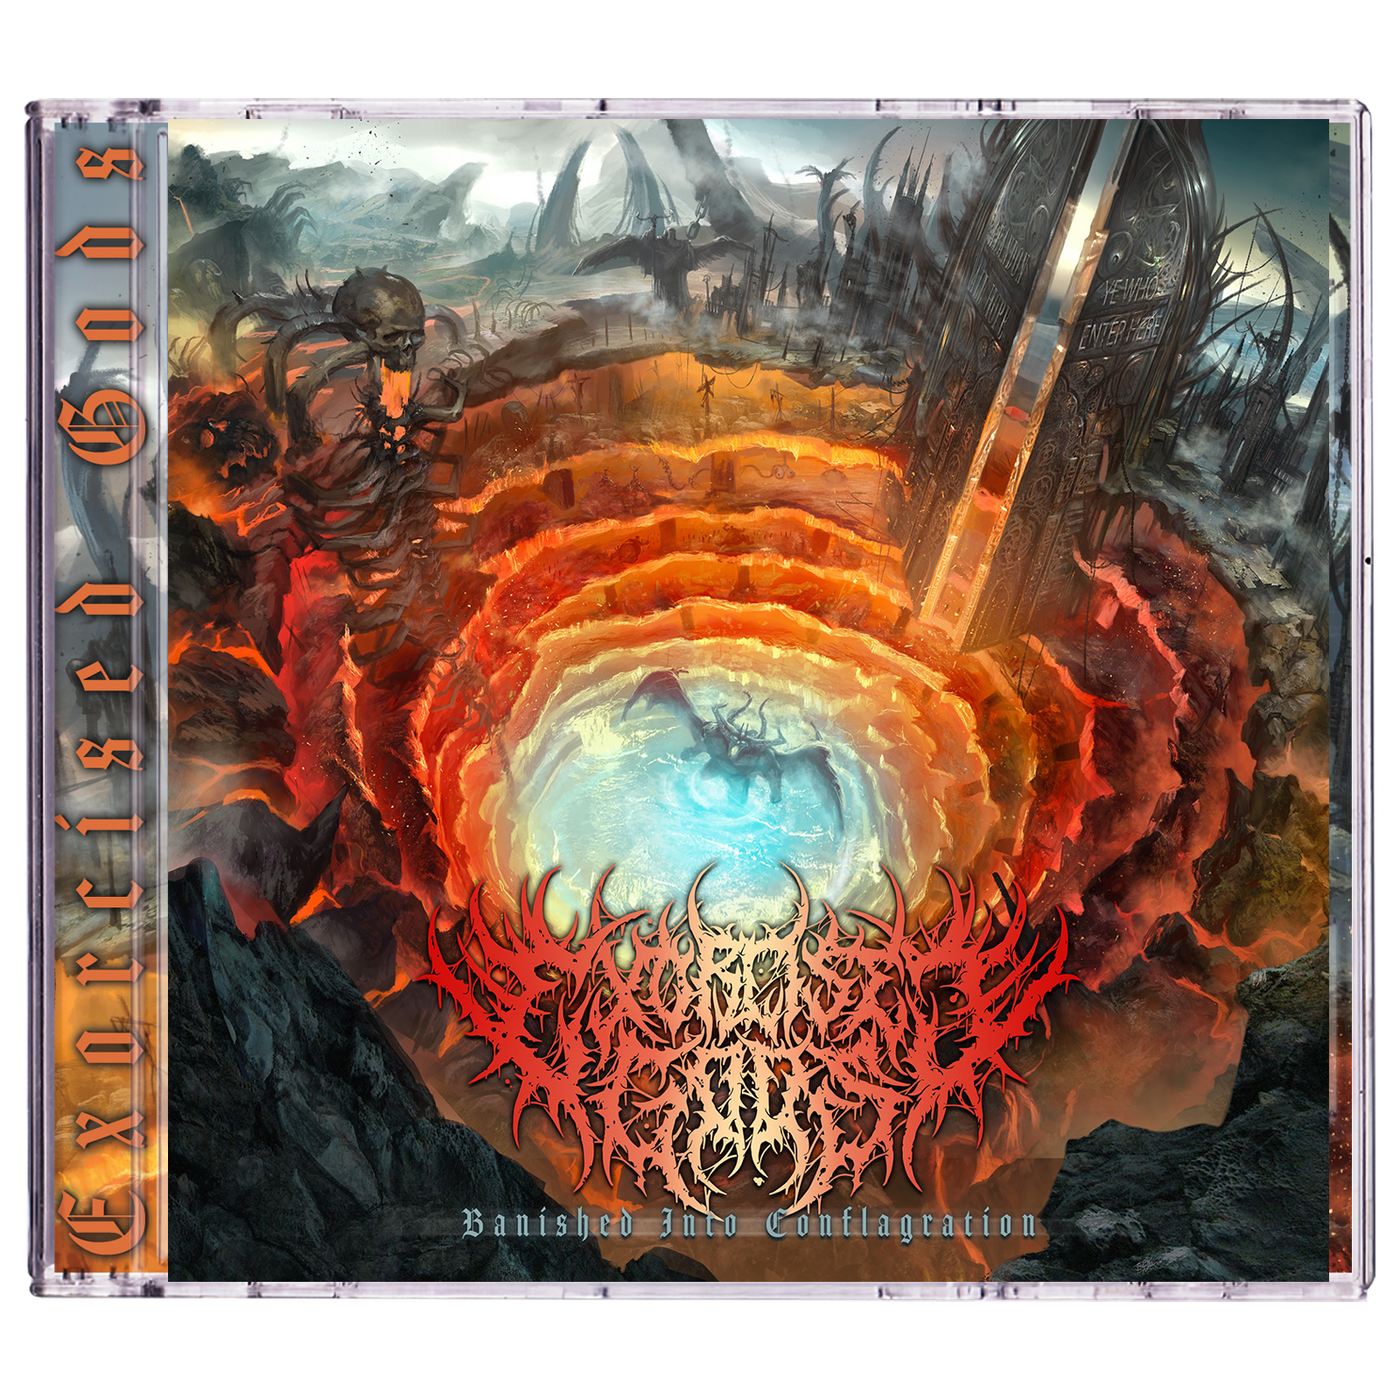 Exorcised Gods 'Banished Into Conflagration' CD